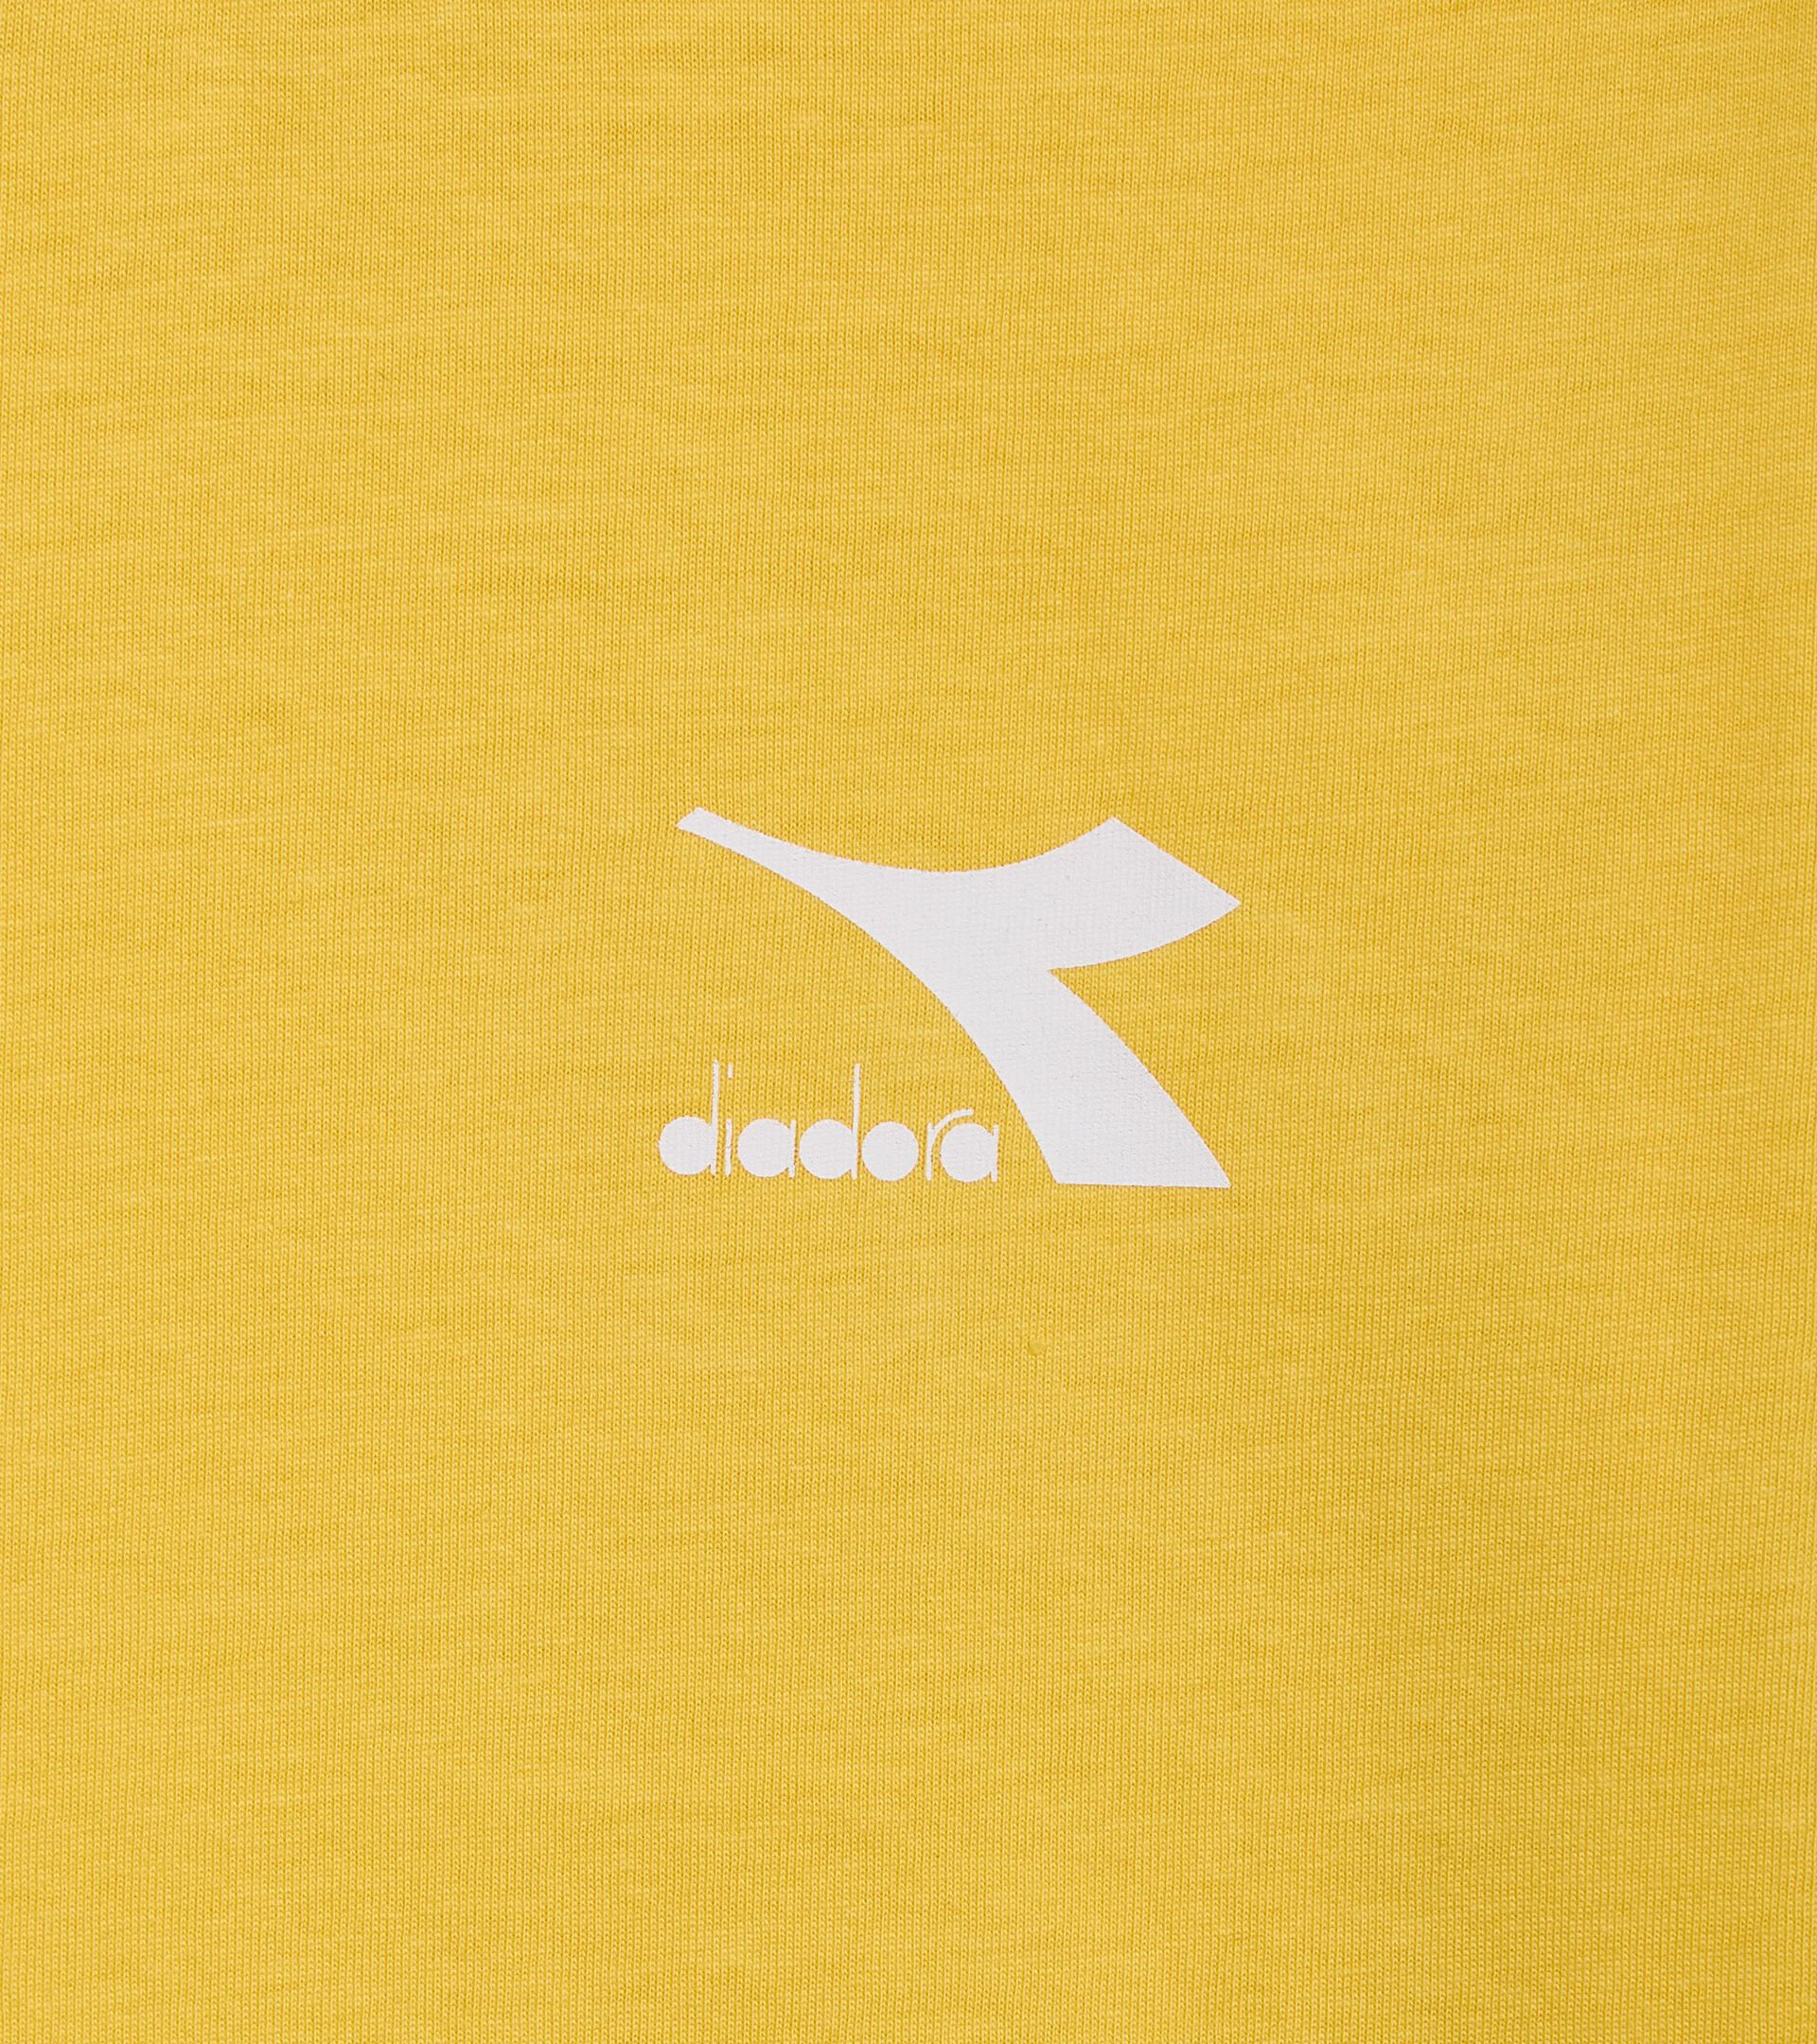 T-shirt en coton - Enfant
 JU.T-SHIRT SS SL JAUNE TREMBLE DORE - Diadora